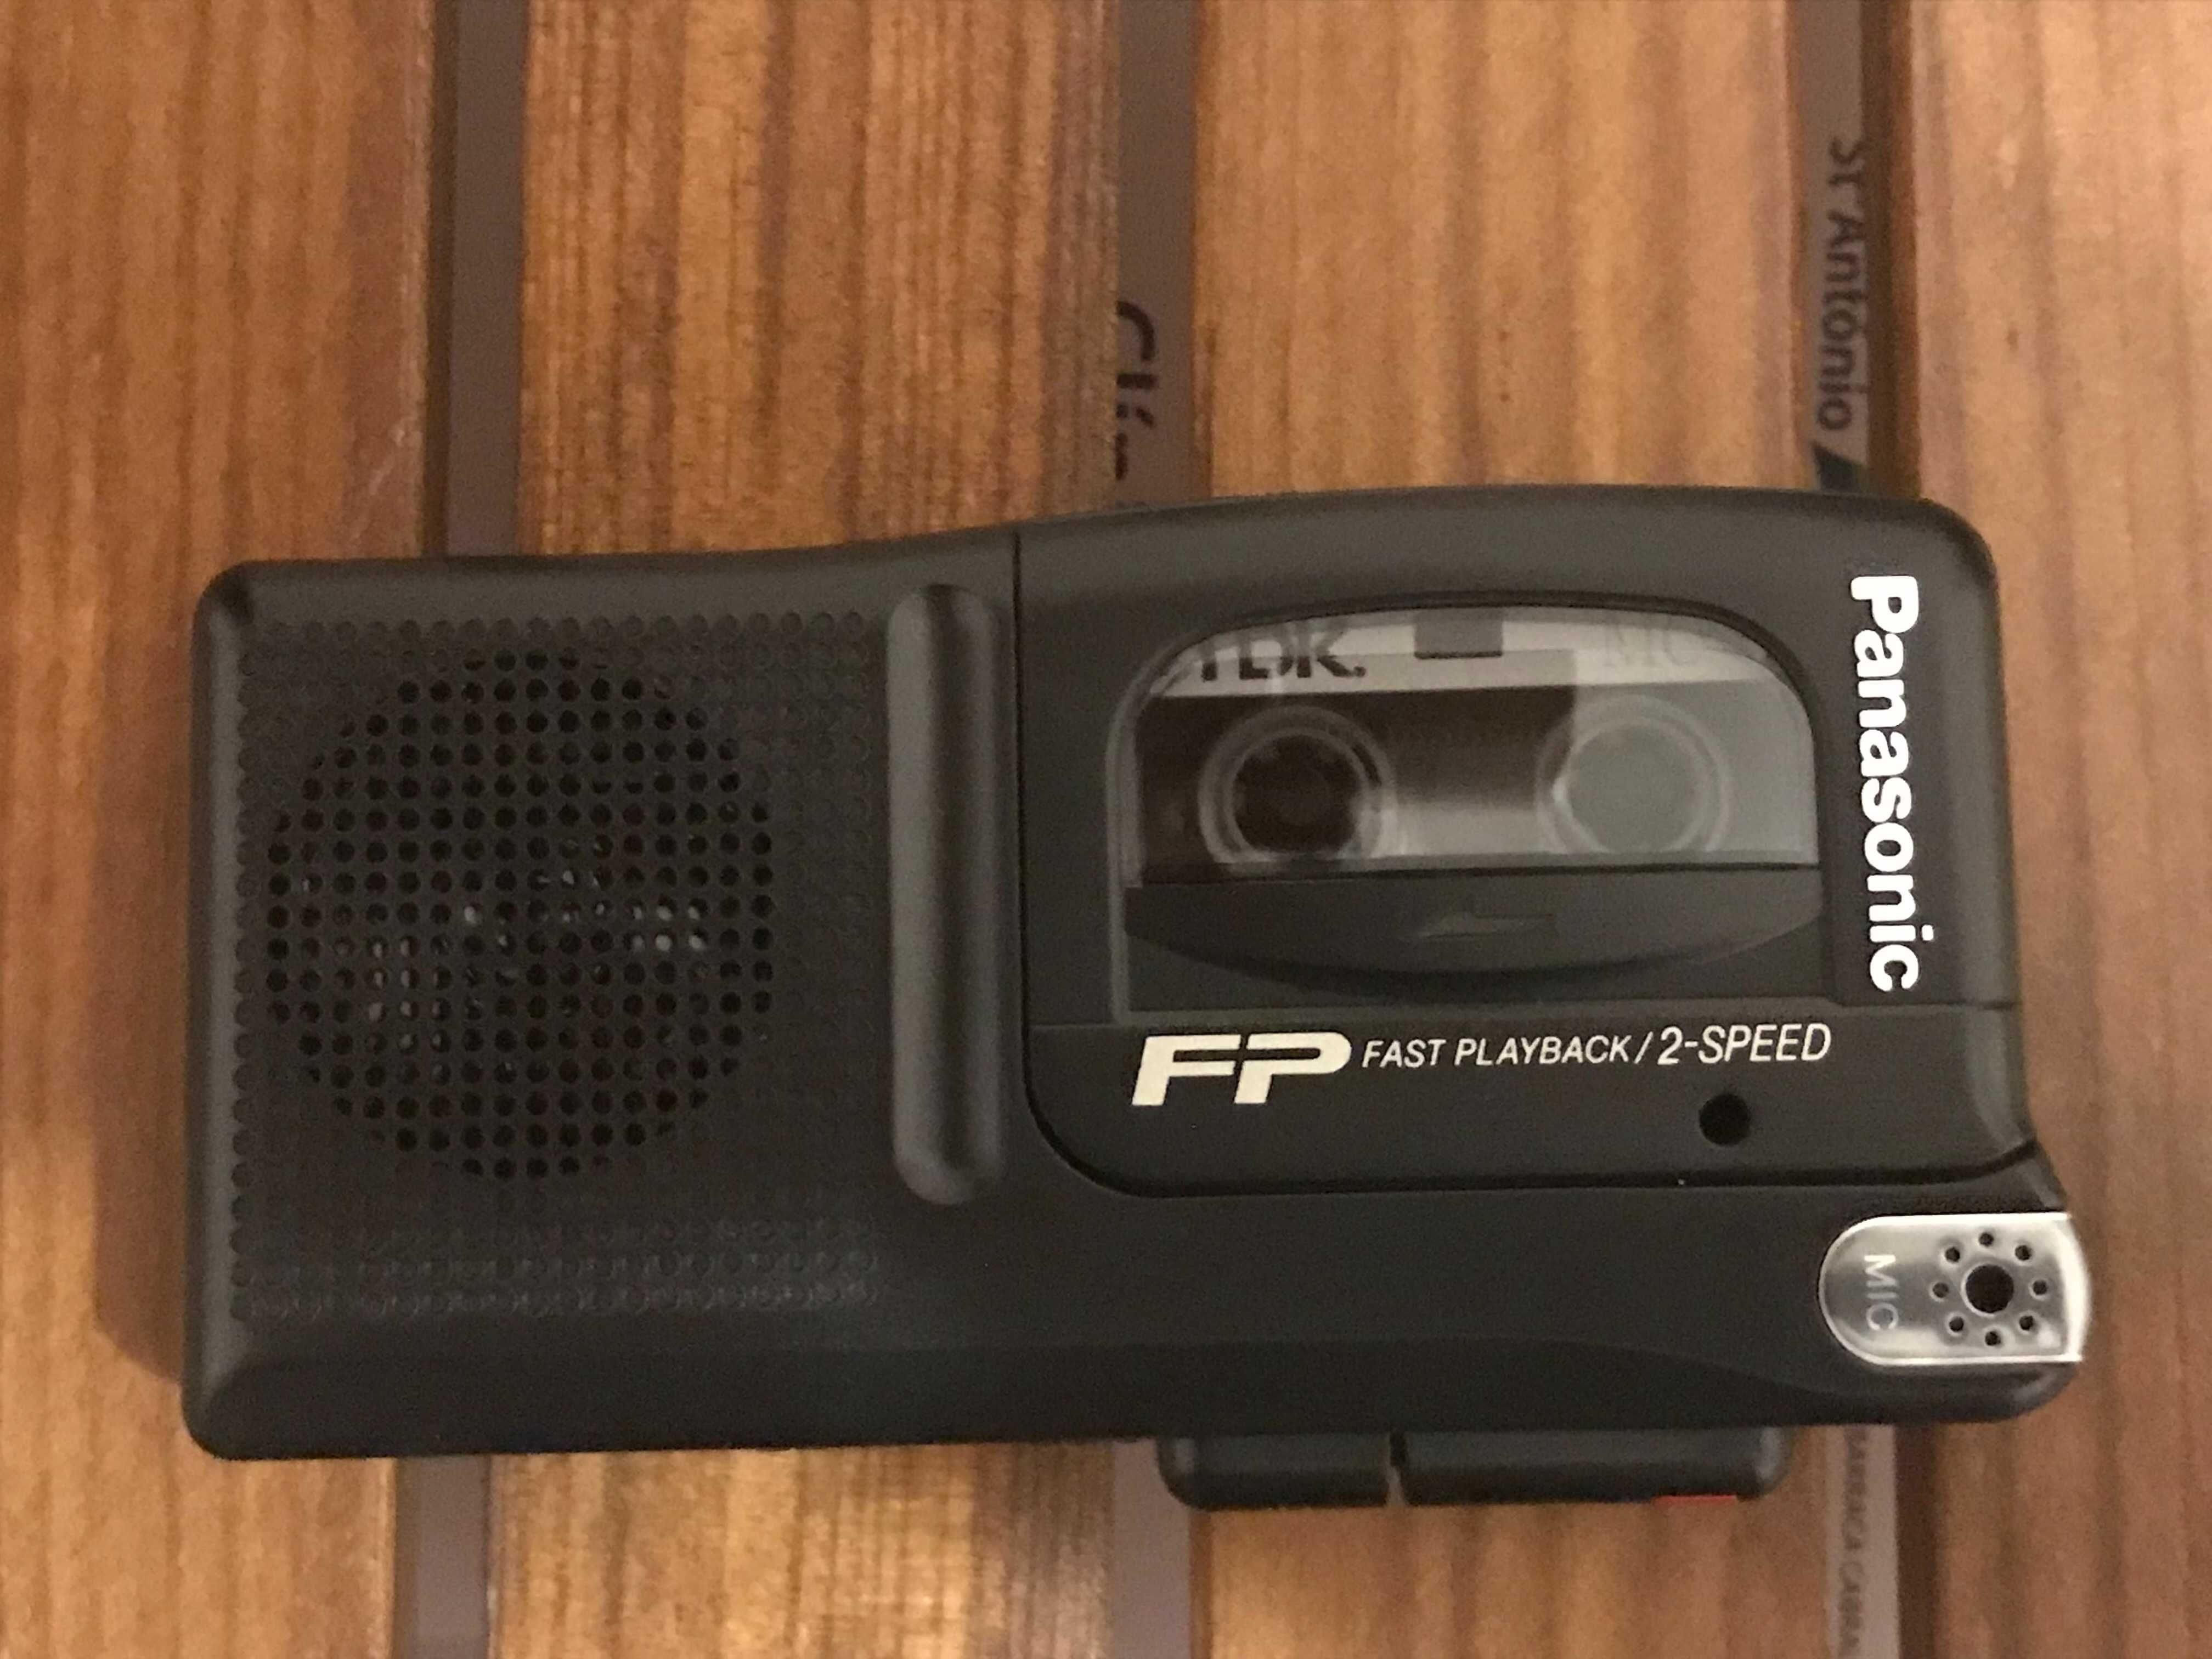 Mini Gravador de Mão Panasonic (2 velocidades)